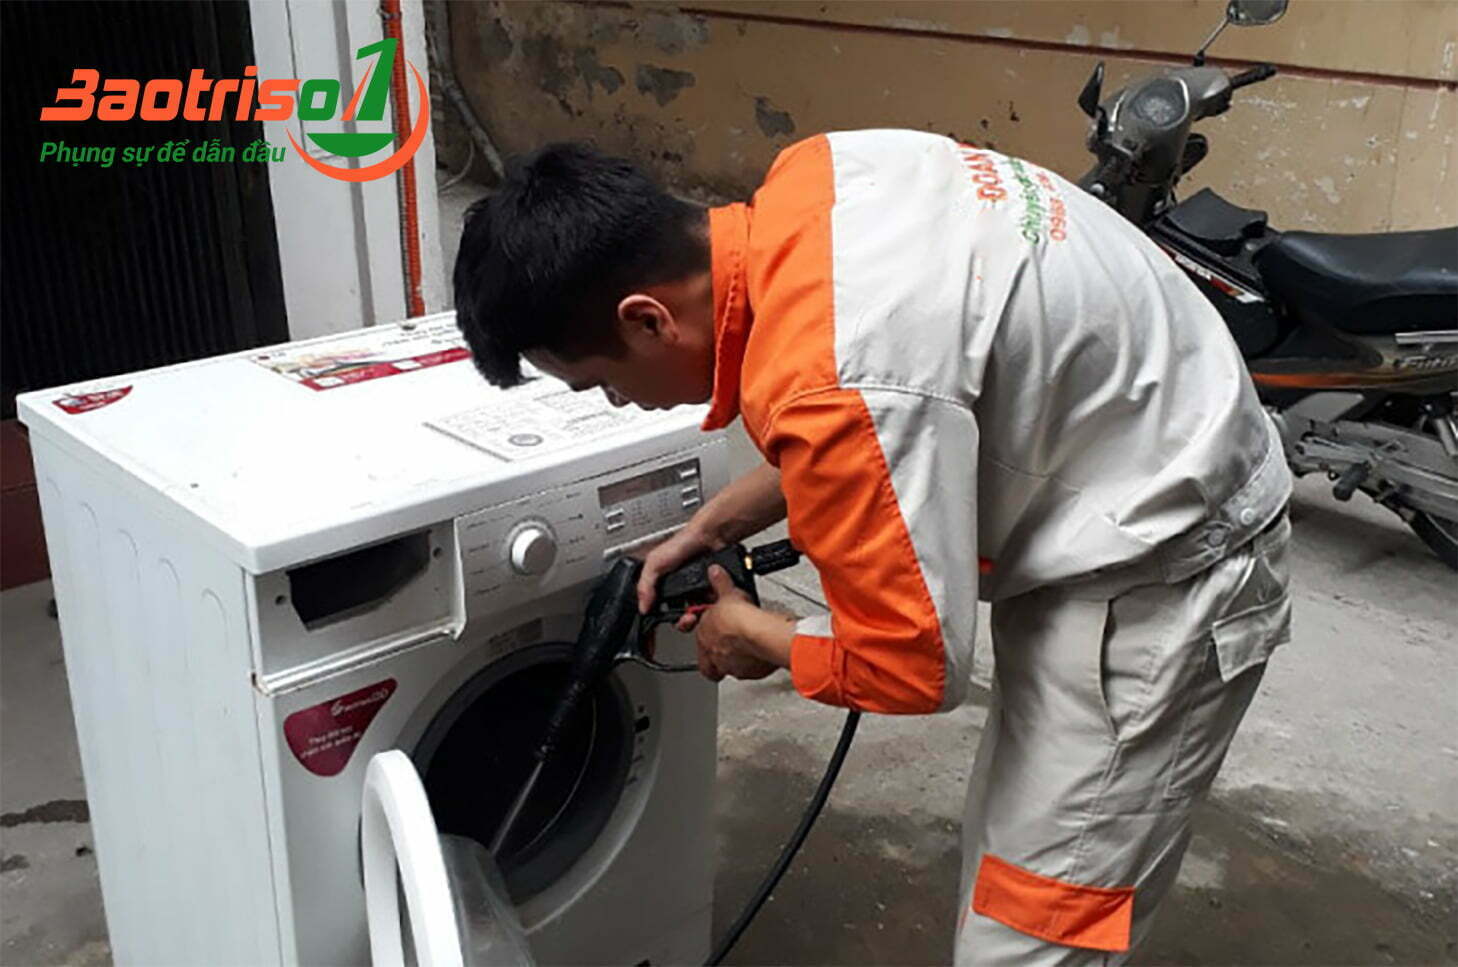 Kĩ thuật viên vệ sinh sửa chữa máy giặt